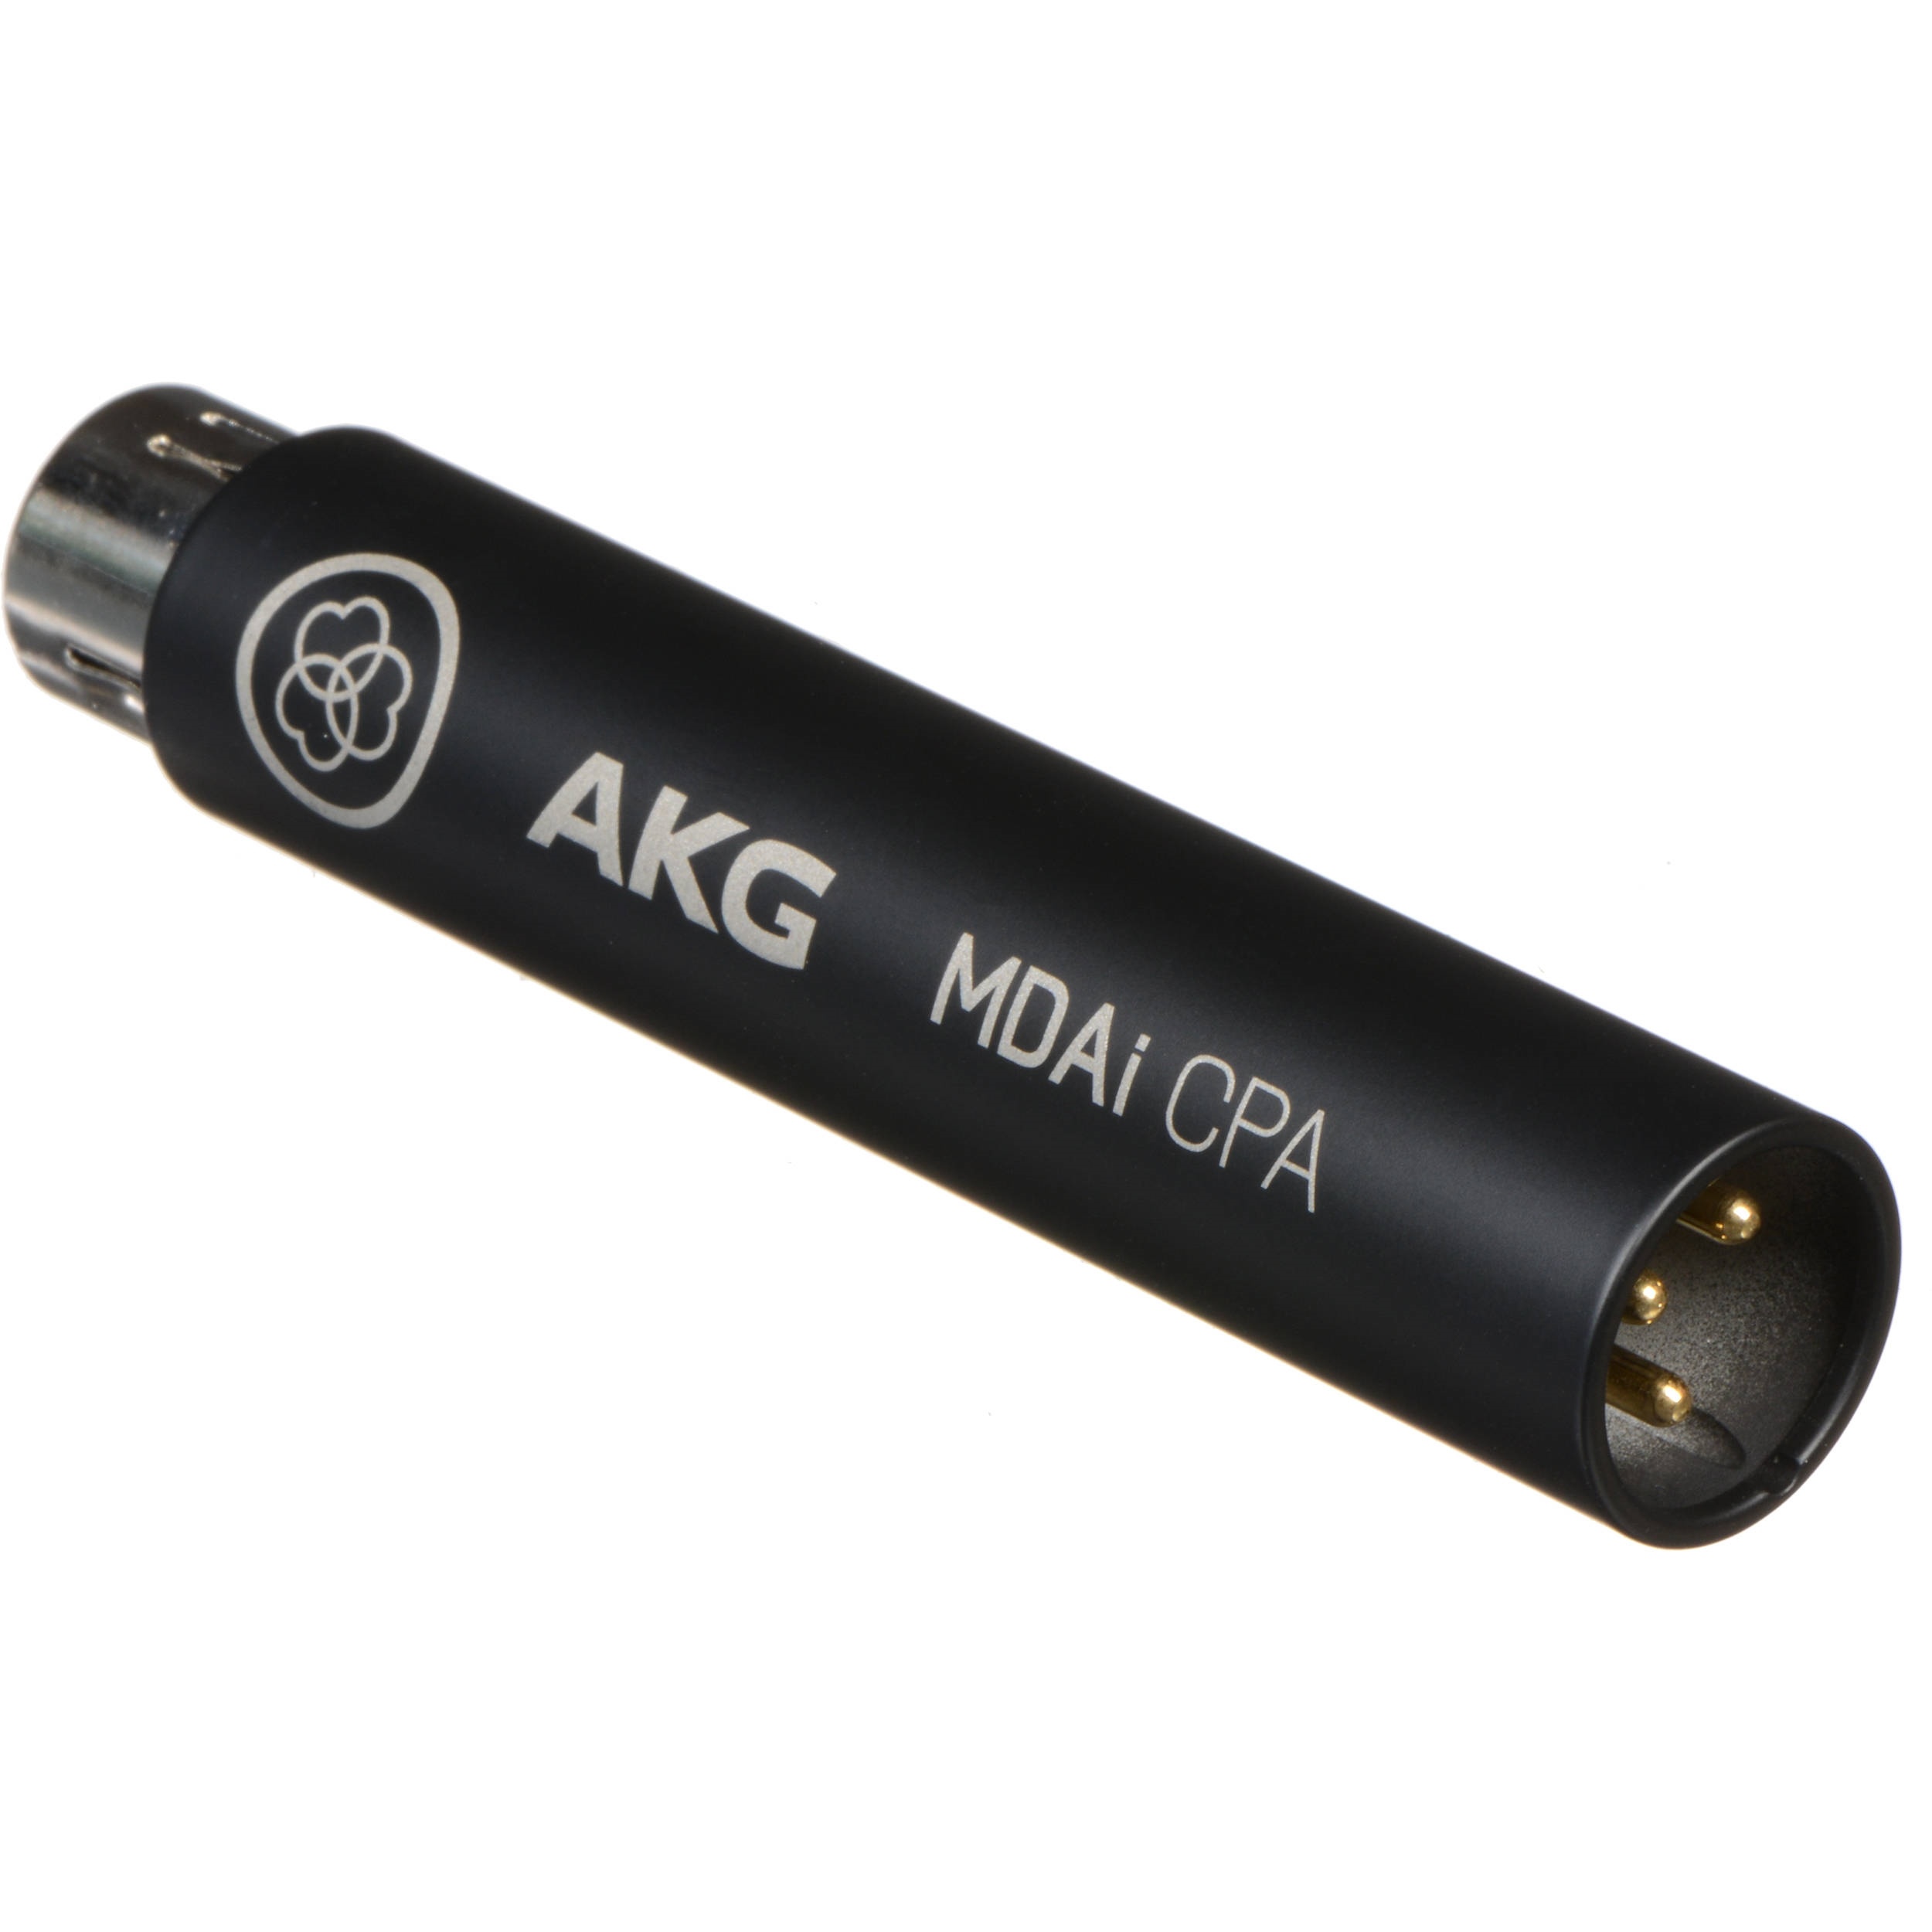 AKG MDAI-CPA Harman Connected Pa Mic Adapter